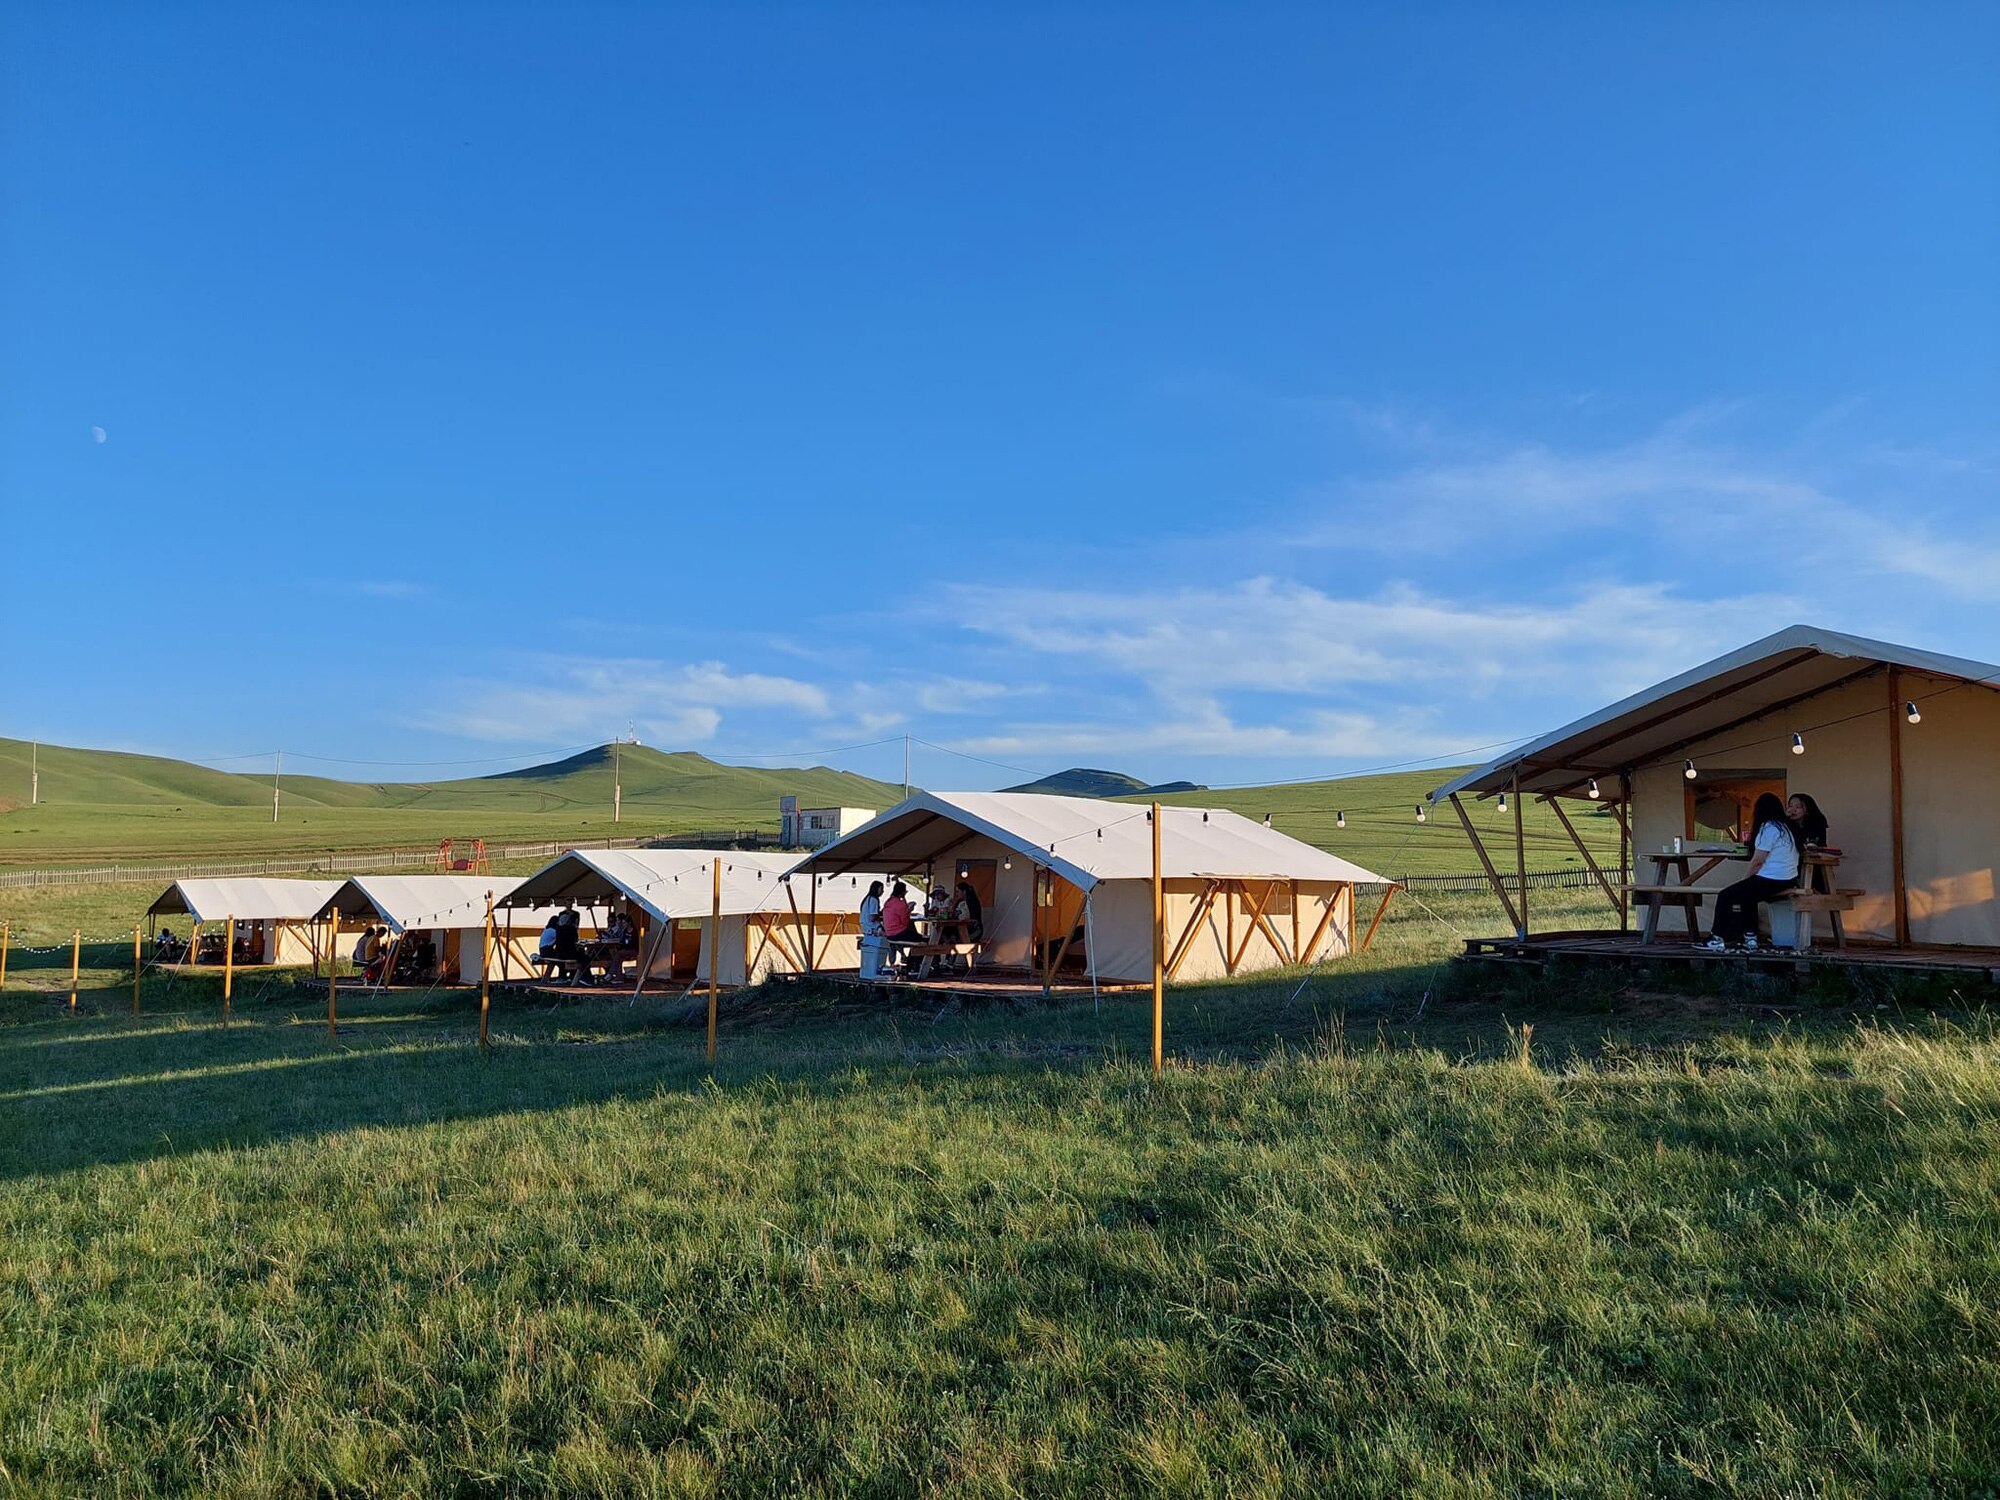 Đúng chất du mục của xứ sở thảo nguyên, với slogan Always Moving, đặc sản của du lịch Mông Cổ là thảo nguyên hoang sơ mênh mông, bát ngát với không khí trong lành, nơi du khách sẽ lang thang hàng giờ trên thảo nguyên, nằm dưới bầu trời sao, quên đi cuộc sống hiện đại tấp nập, ngột ngạt - Ảnh: Maikhan Camp & TDM Tourist LLC